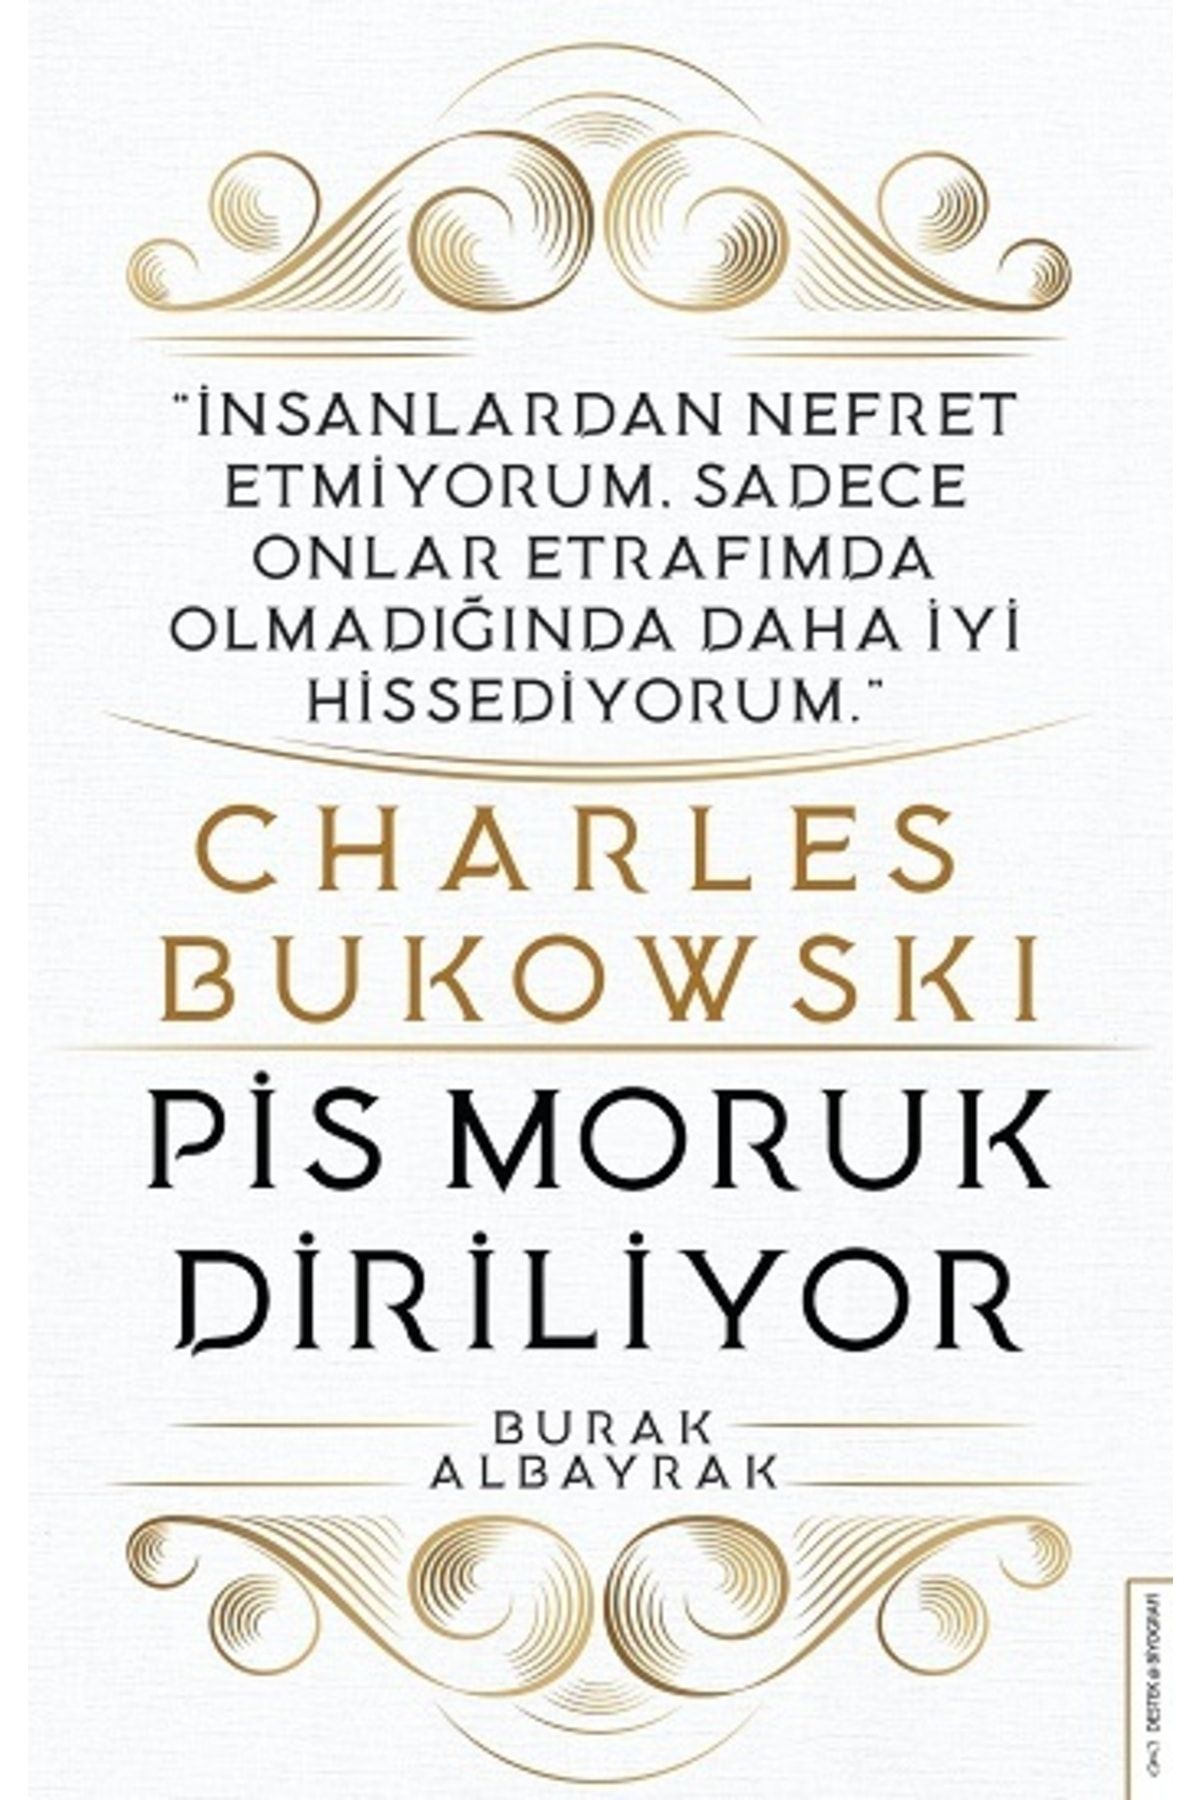 Destek Yayınları Charles Bukowski - Pis Moruk Diriliyor - Burak Albayrak